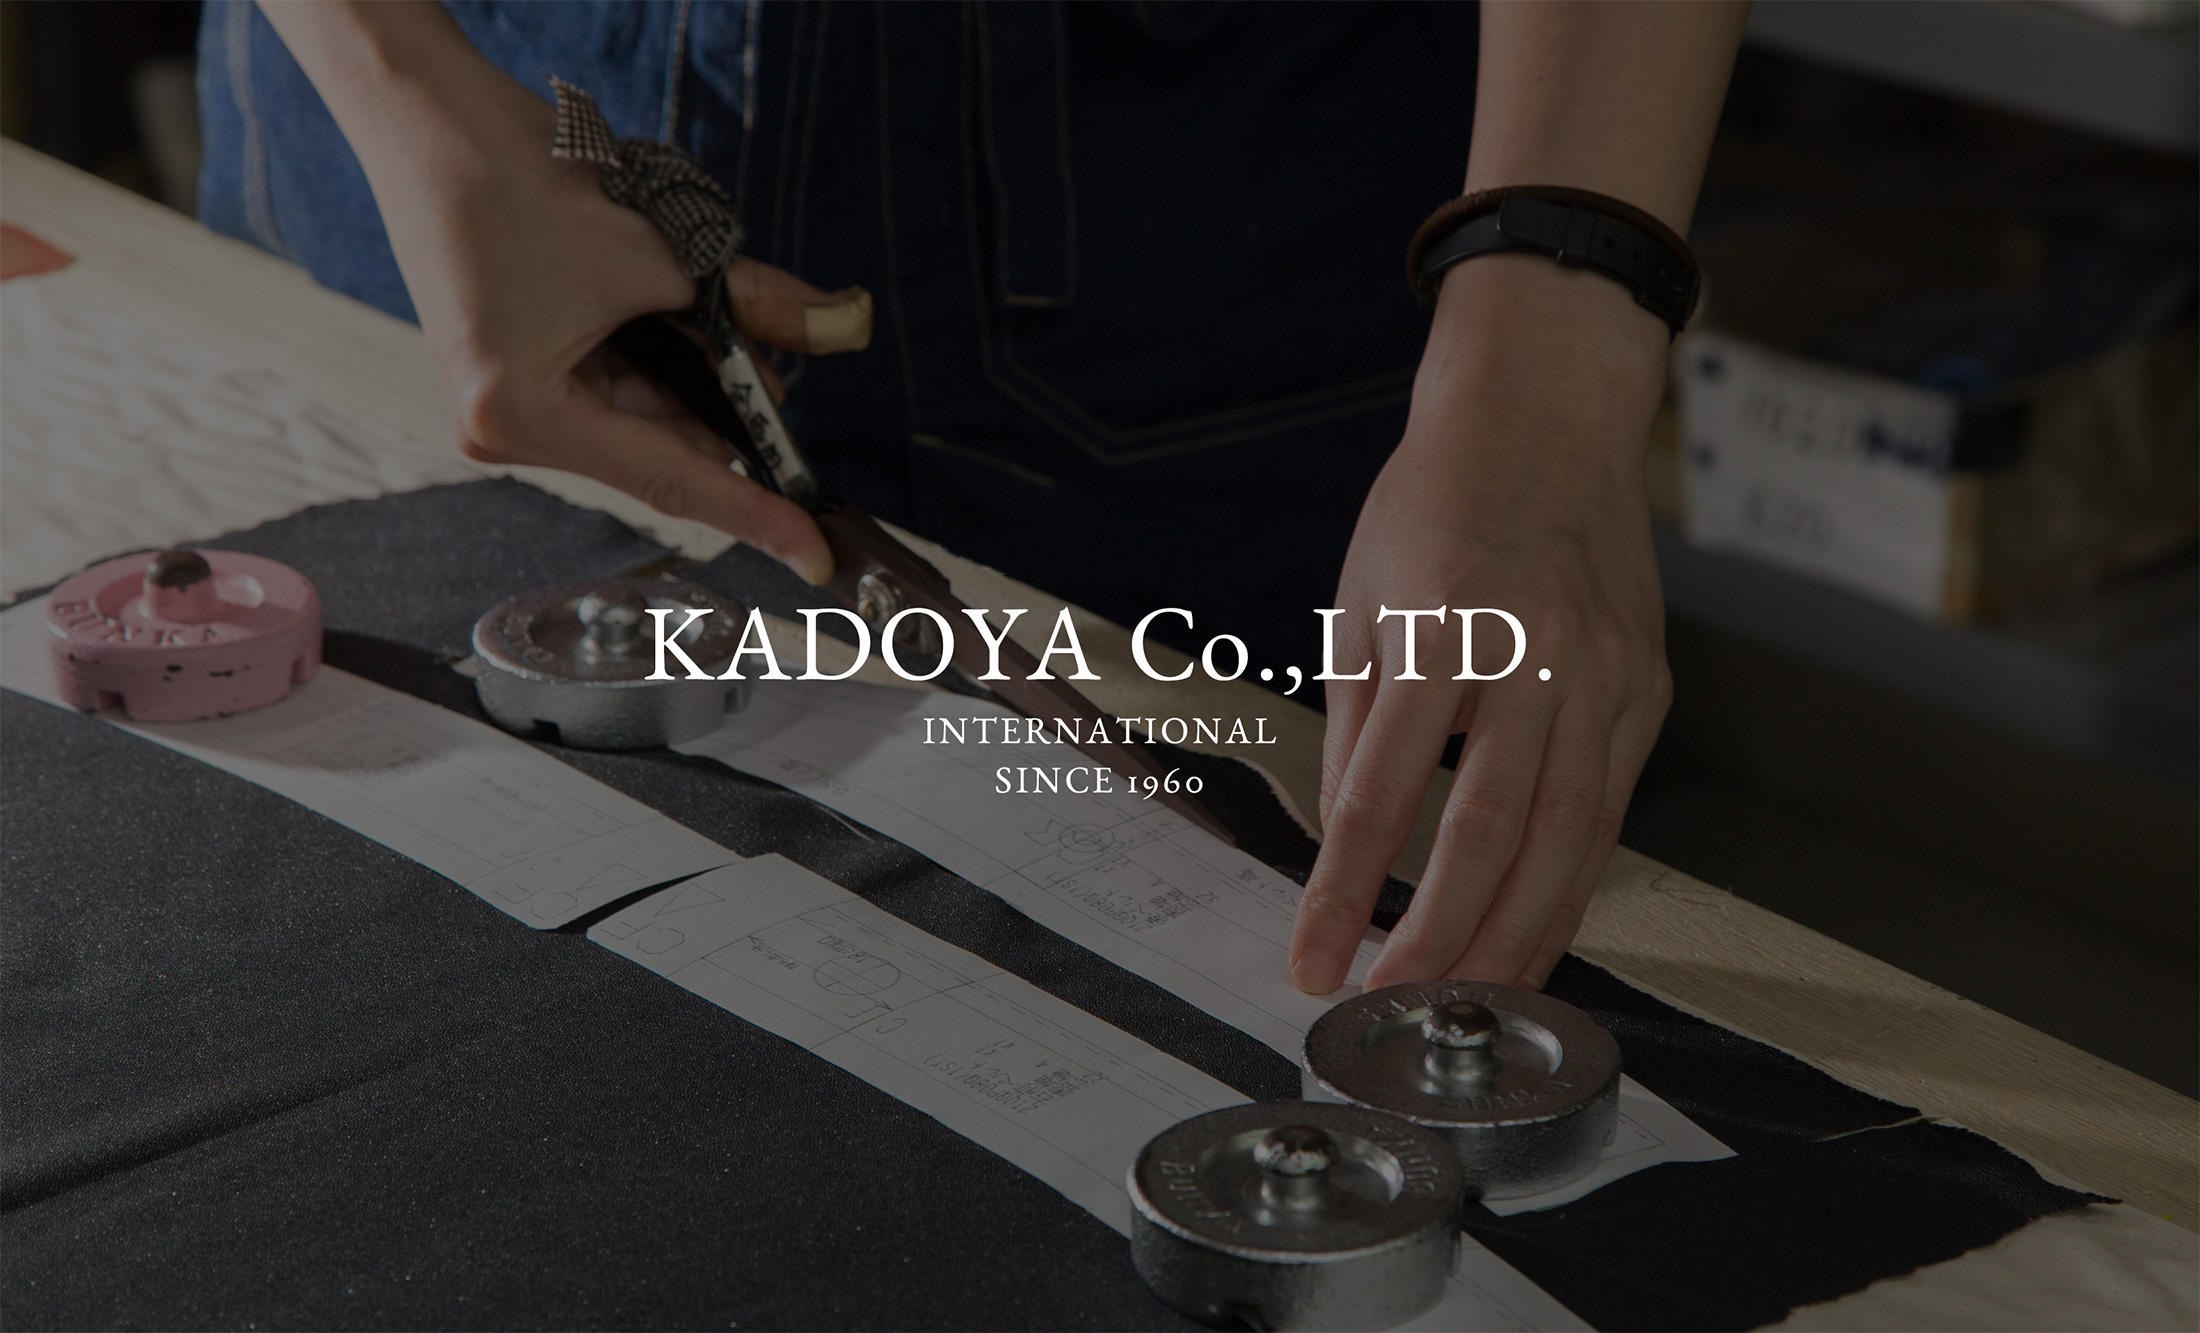 KADOYA Co.,LTD. INTERNATIONAL SINCE 1960